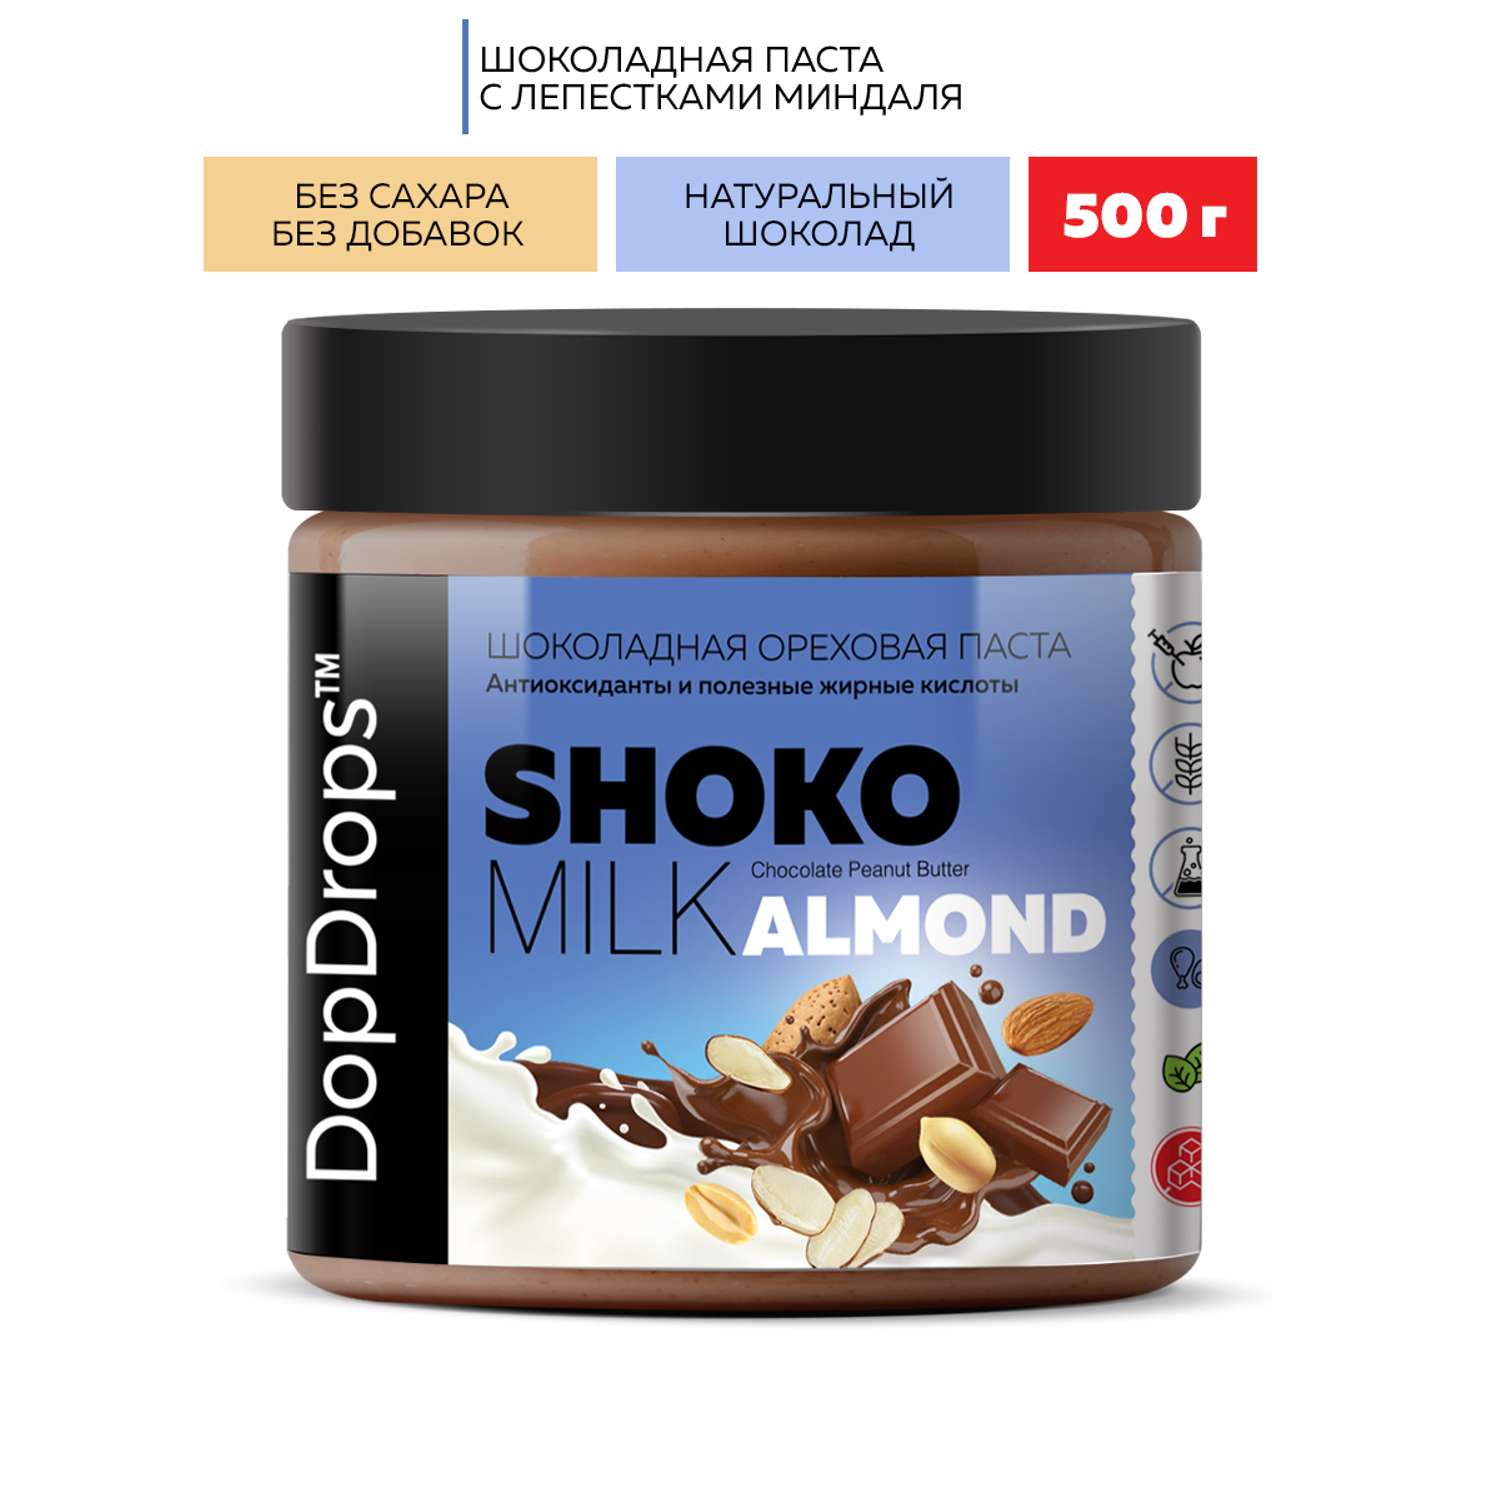 Шоколадная ореховая паста DopDrops Shoko milk арахисовая с лепестками миндаля без сахара 500 г - фото 1